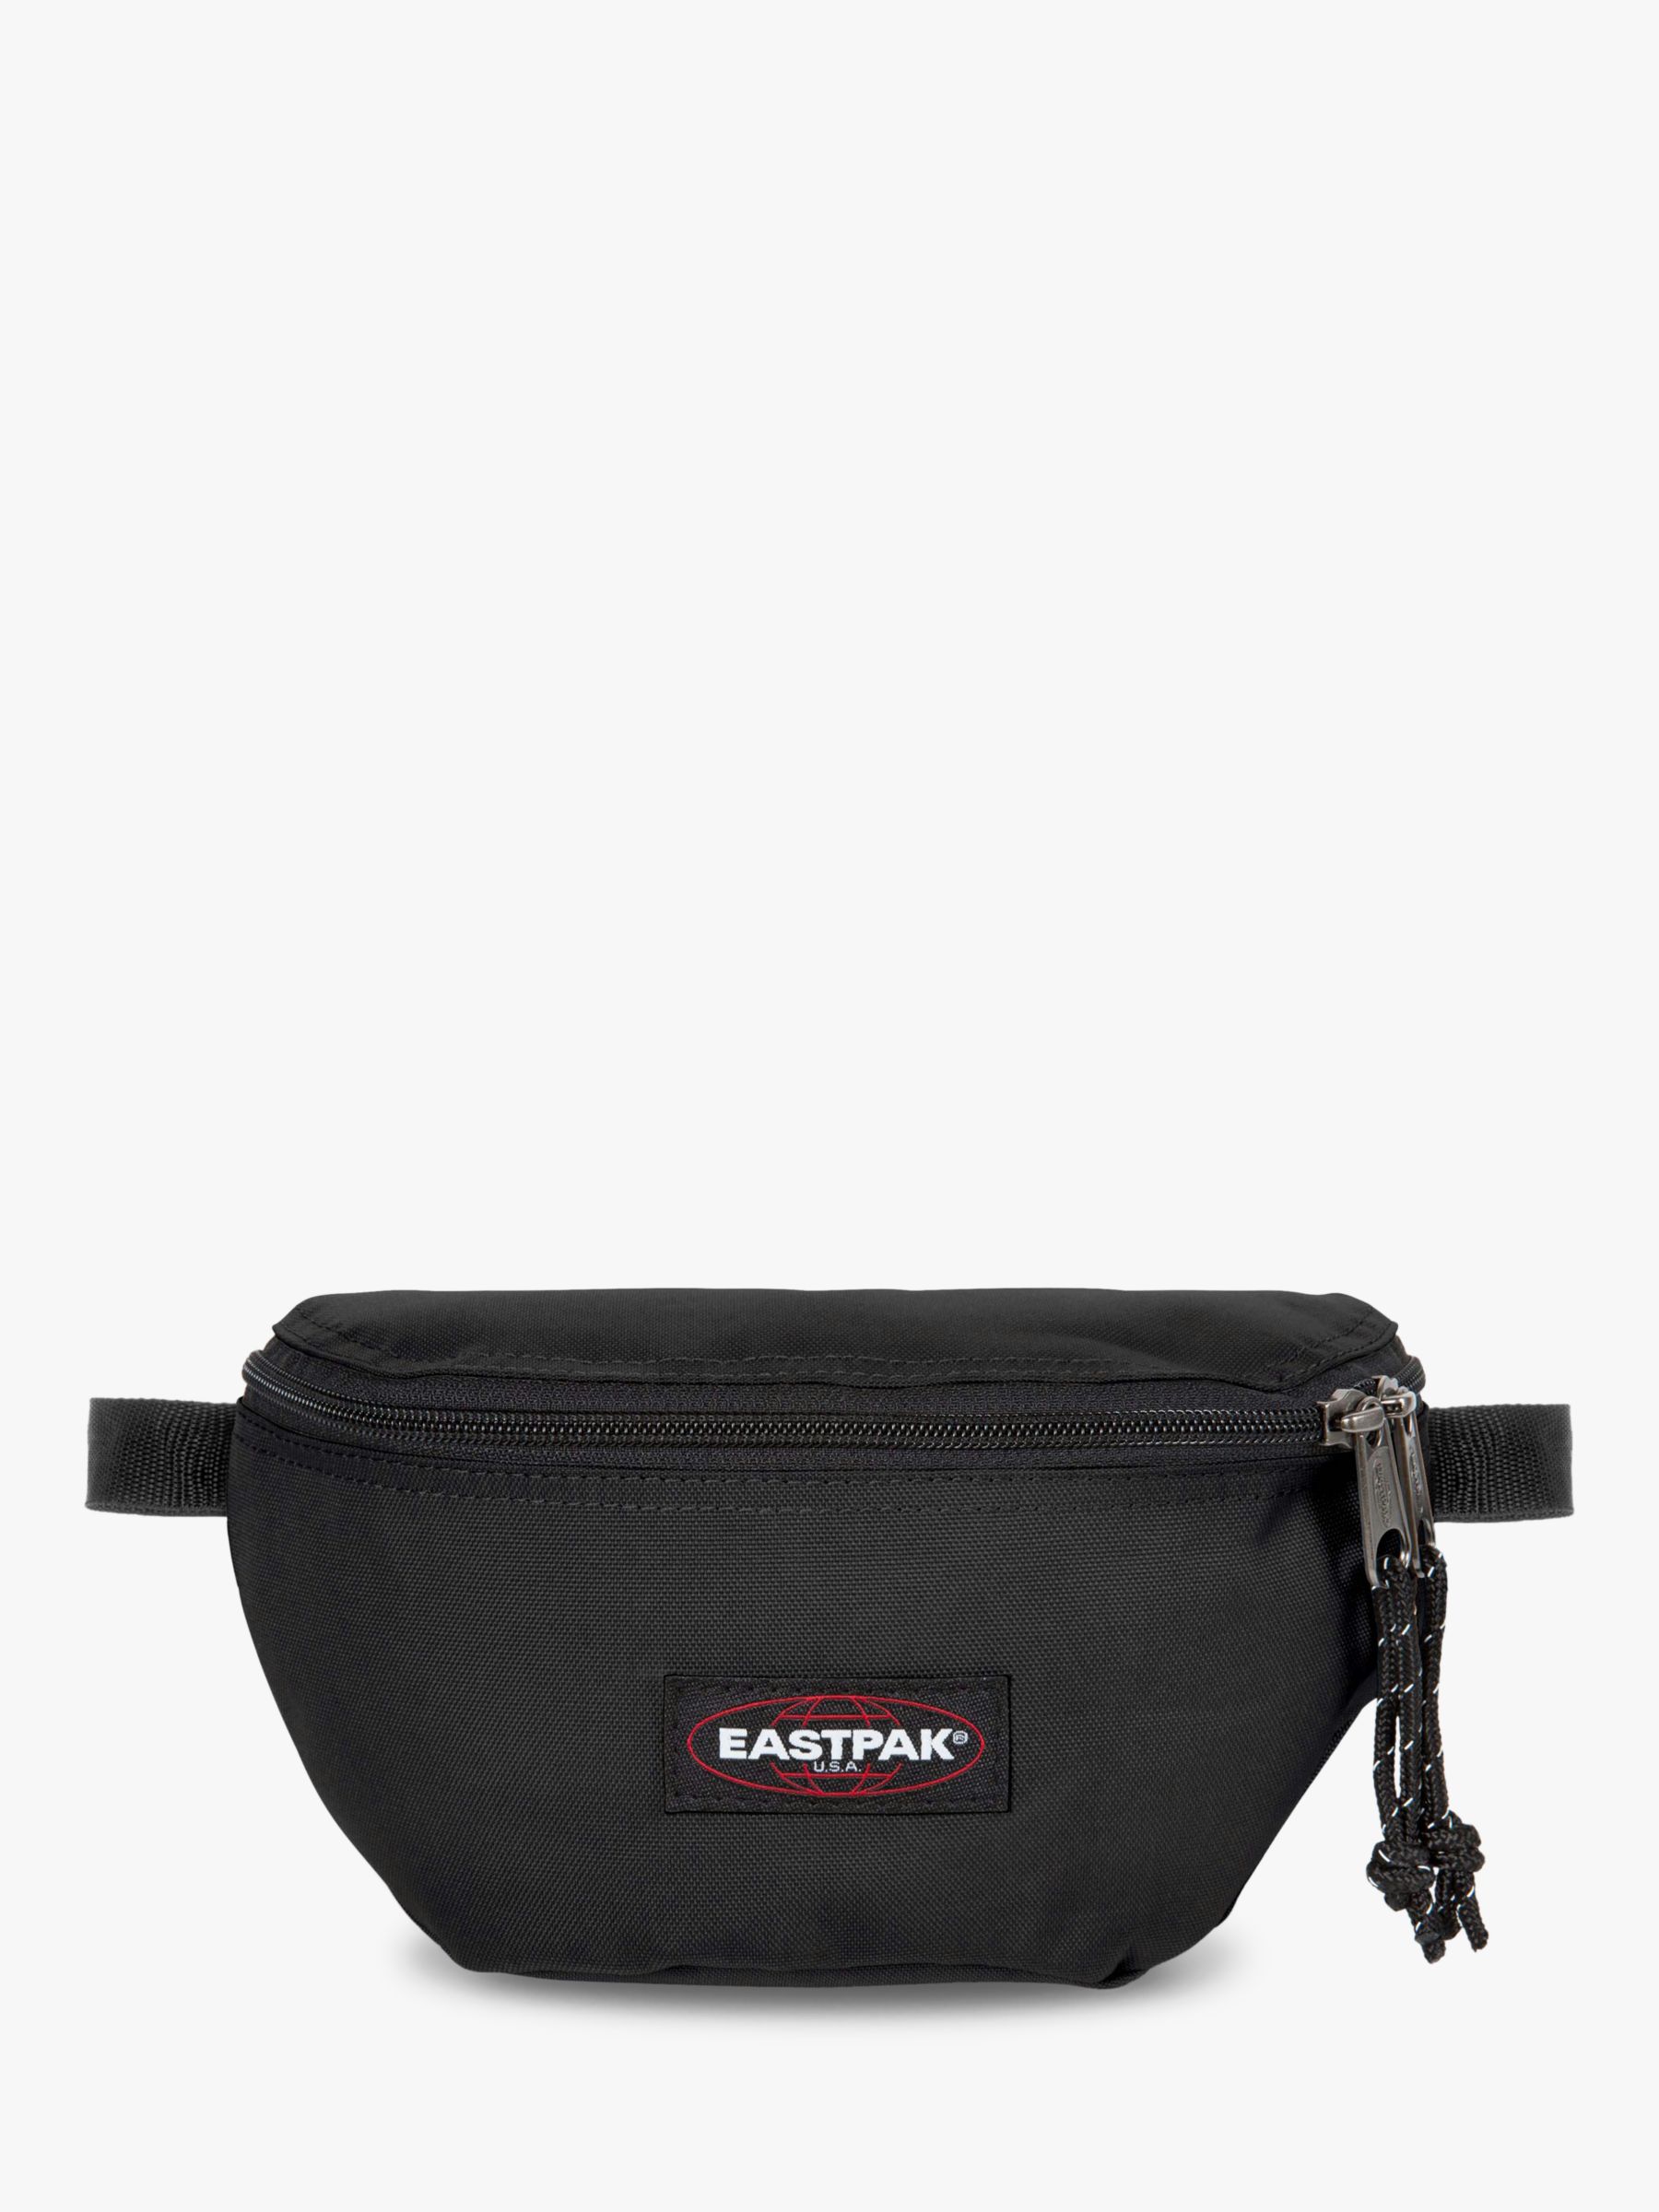 Eastpak Springer Bum Bag, Black at John Lewis & Partners